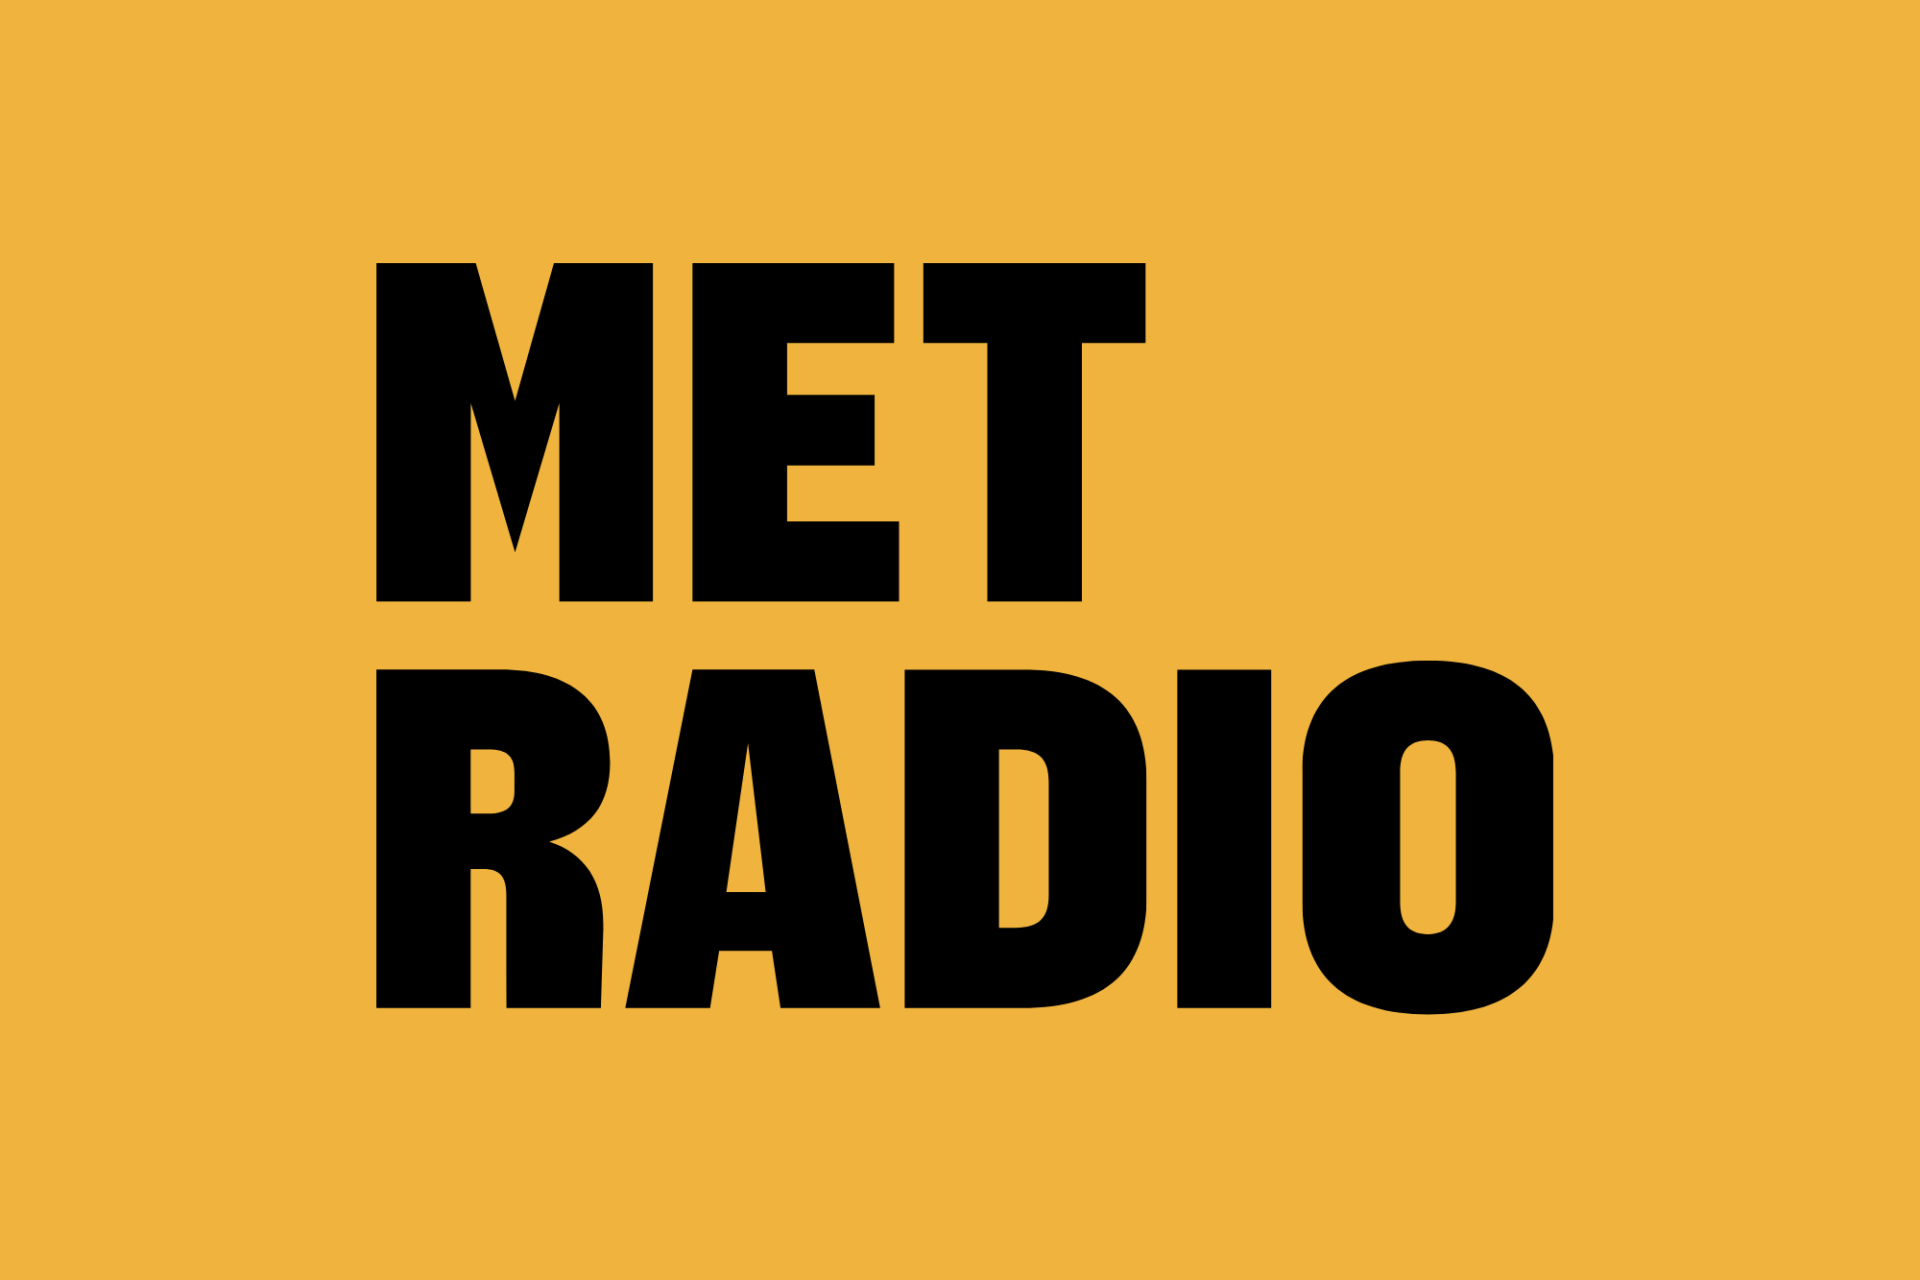 MetRadio logo in yellow